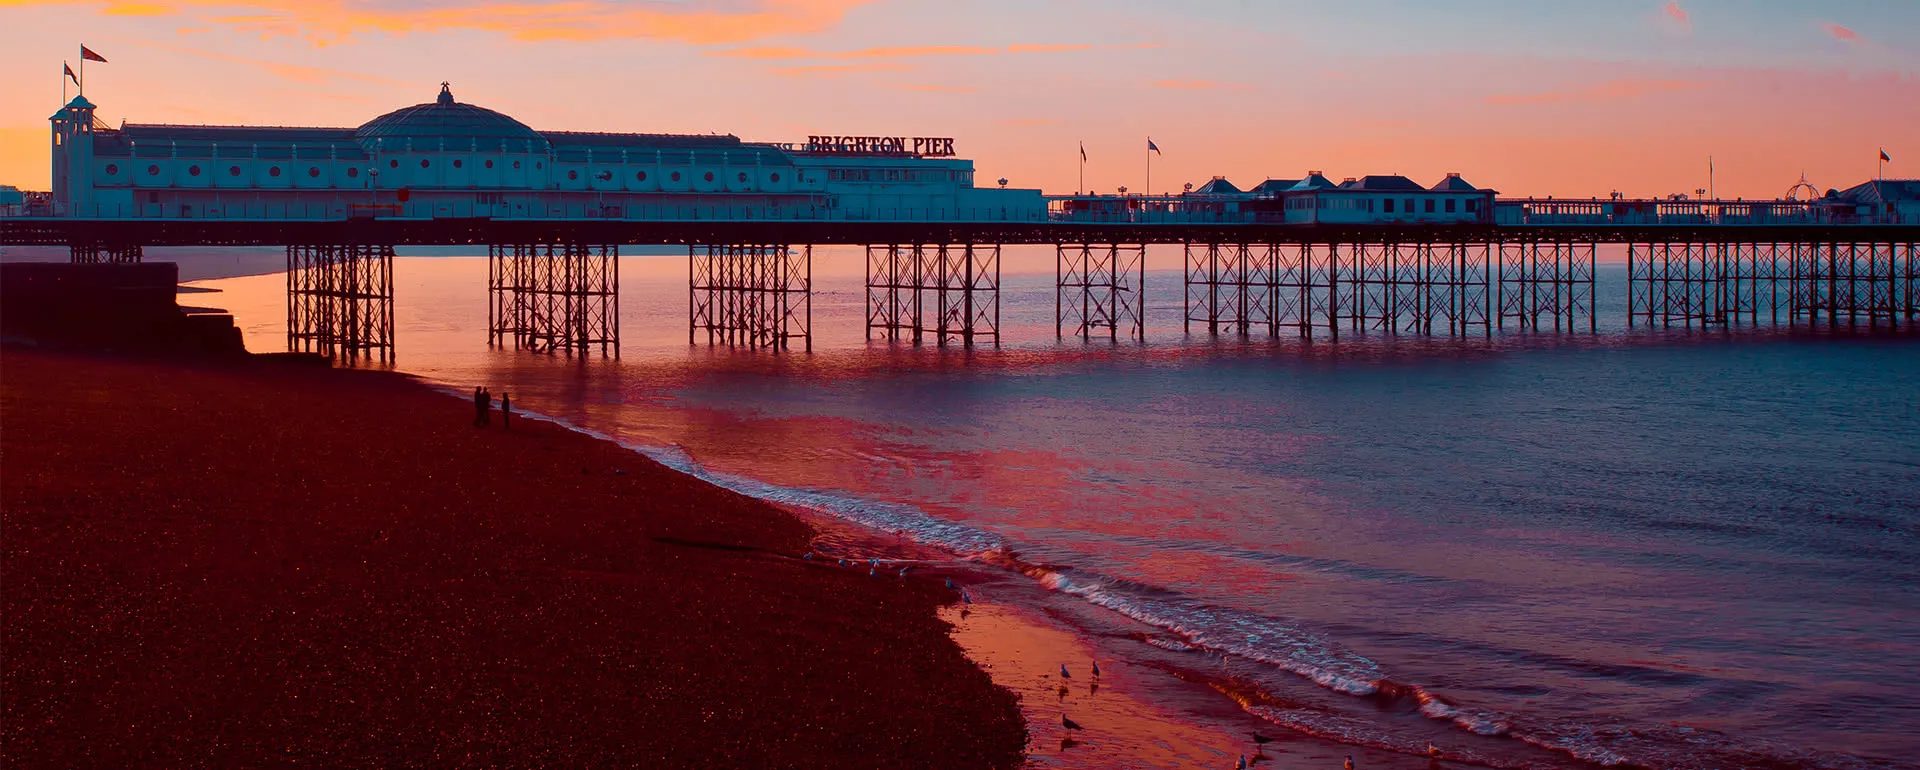 Brighton - the destination for school trips